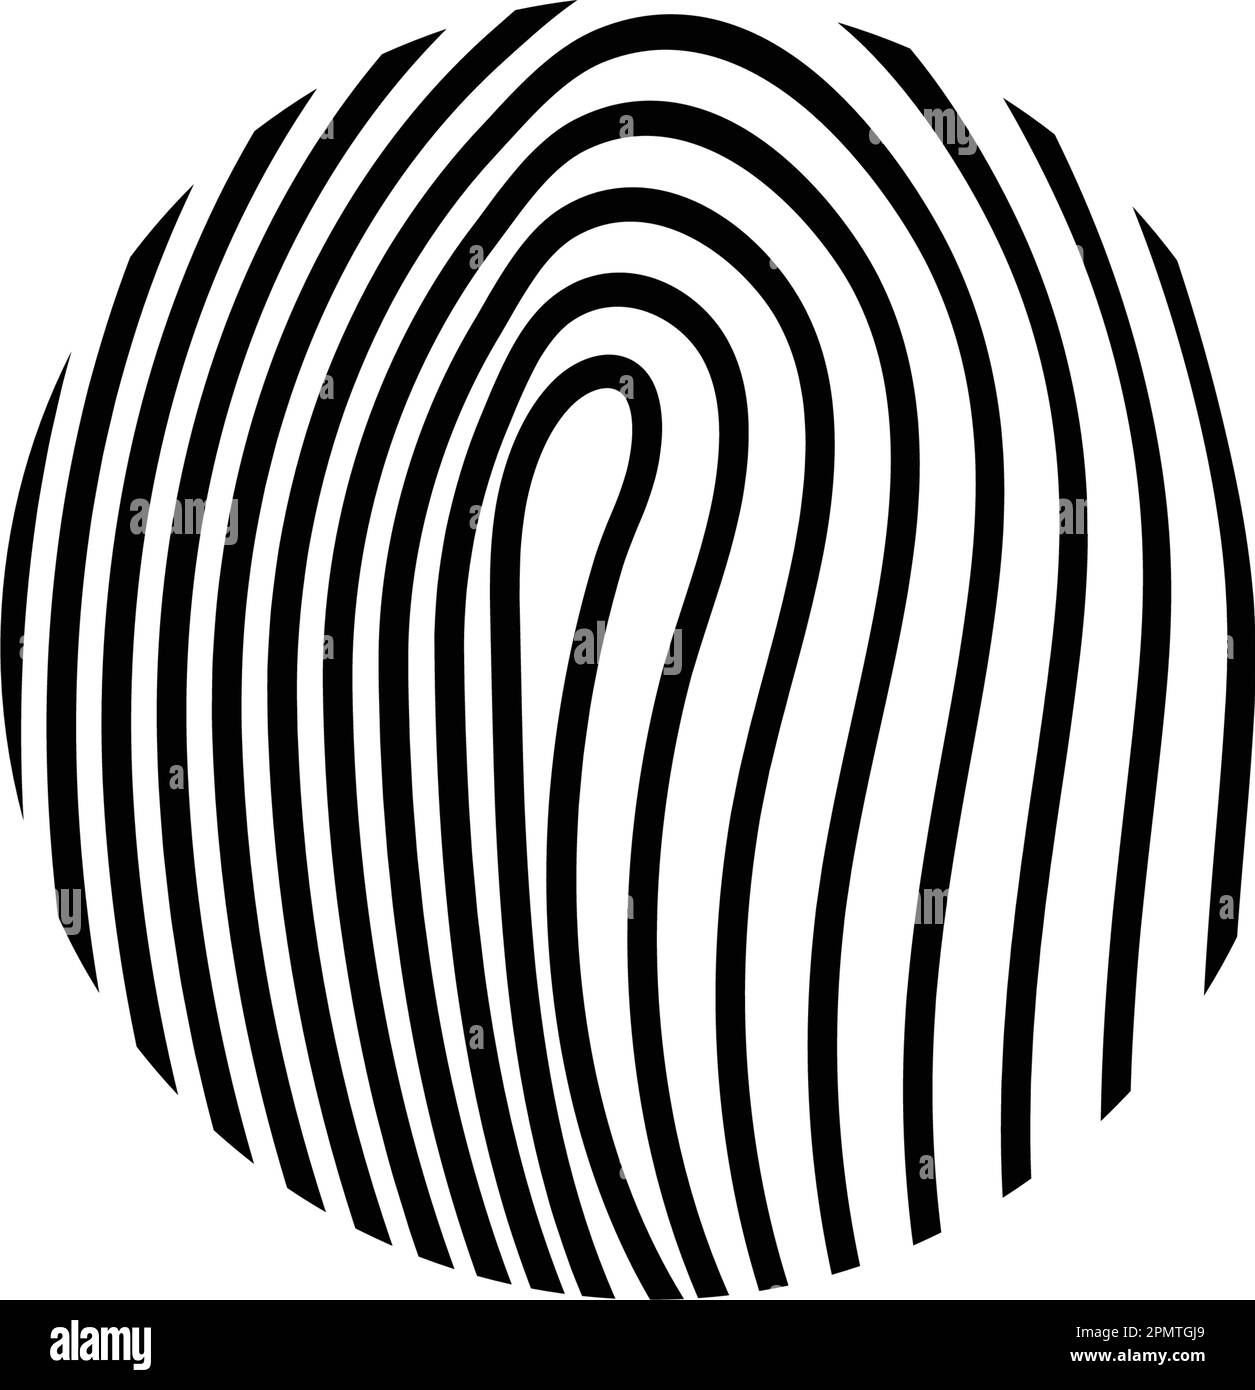 fingerprint probe logo vector illustration design Stock Vector